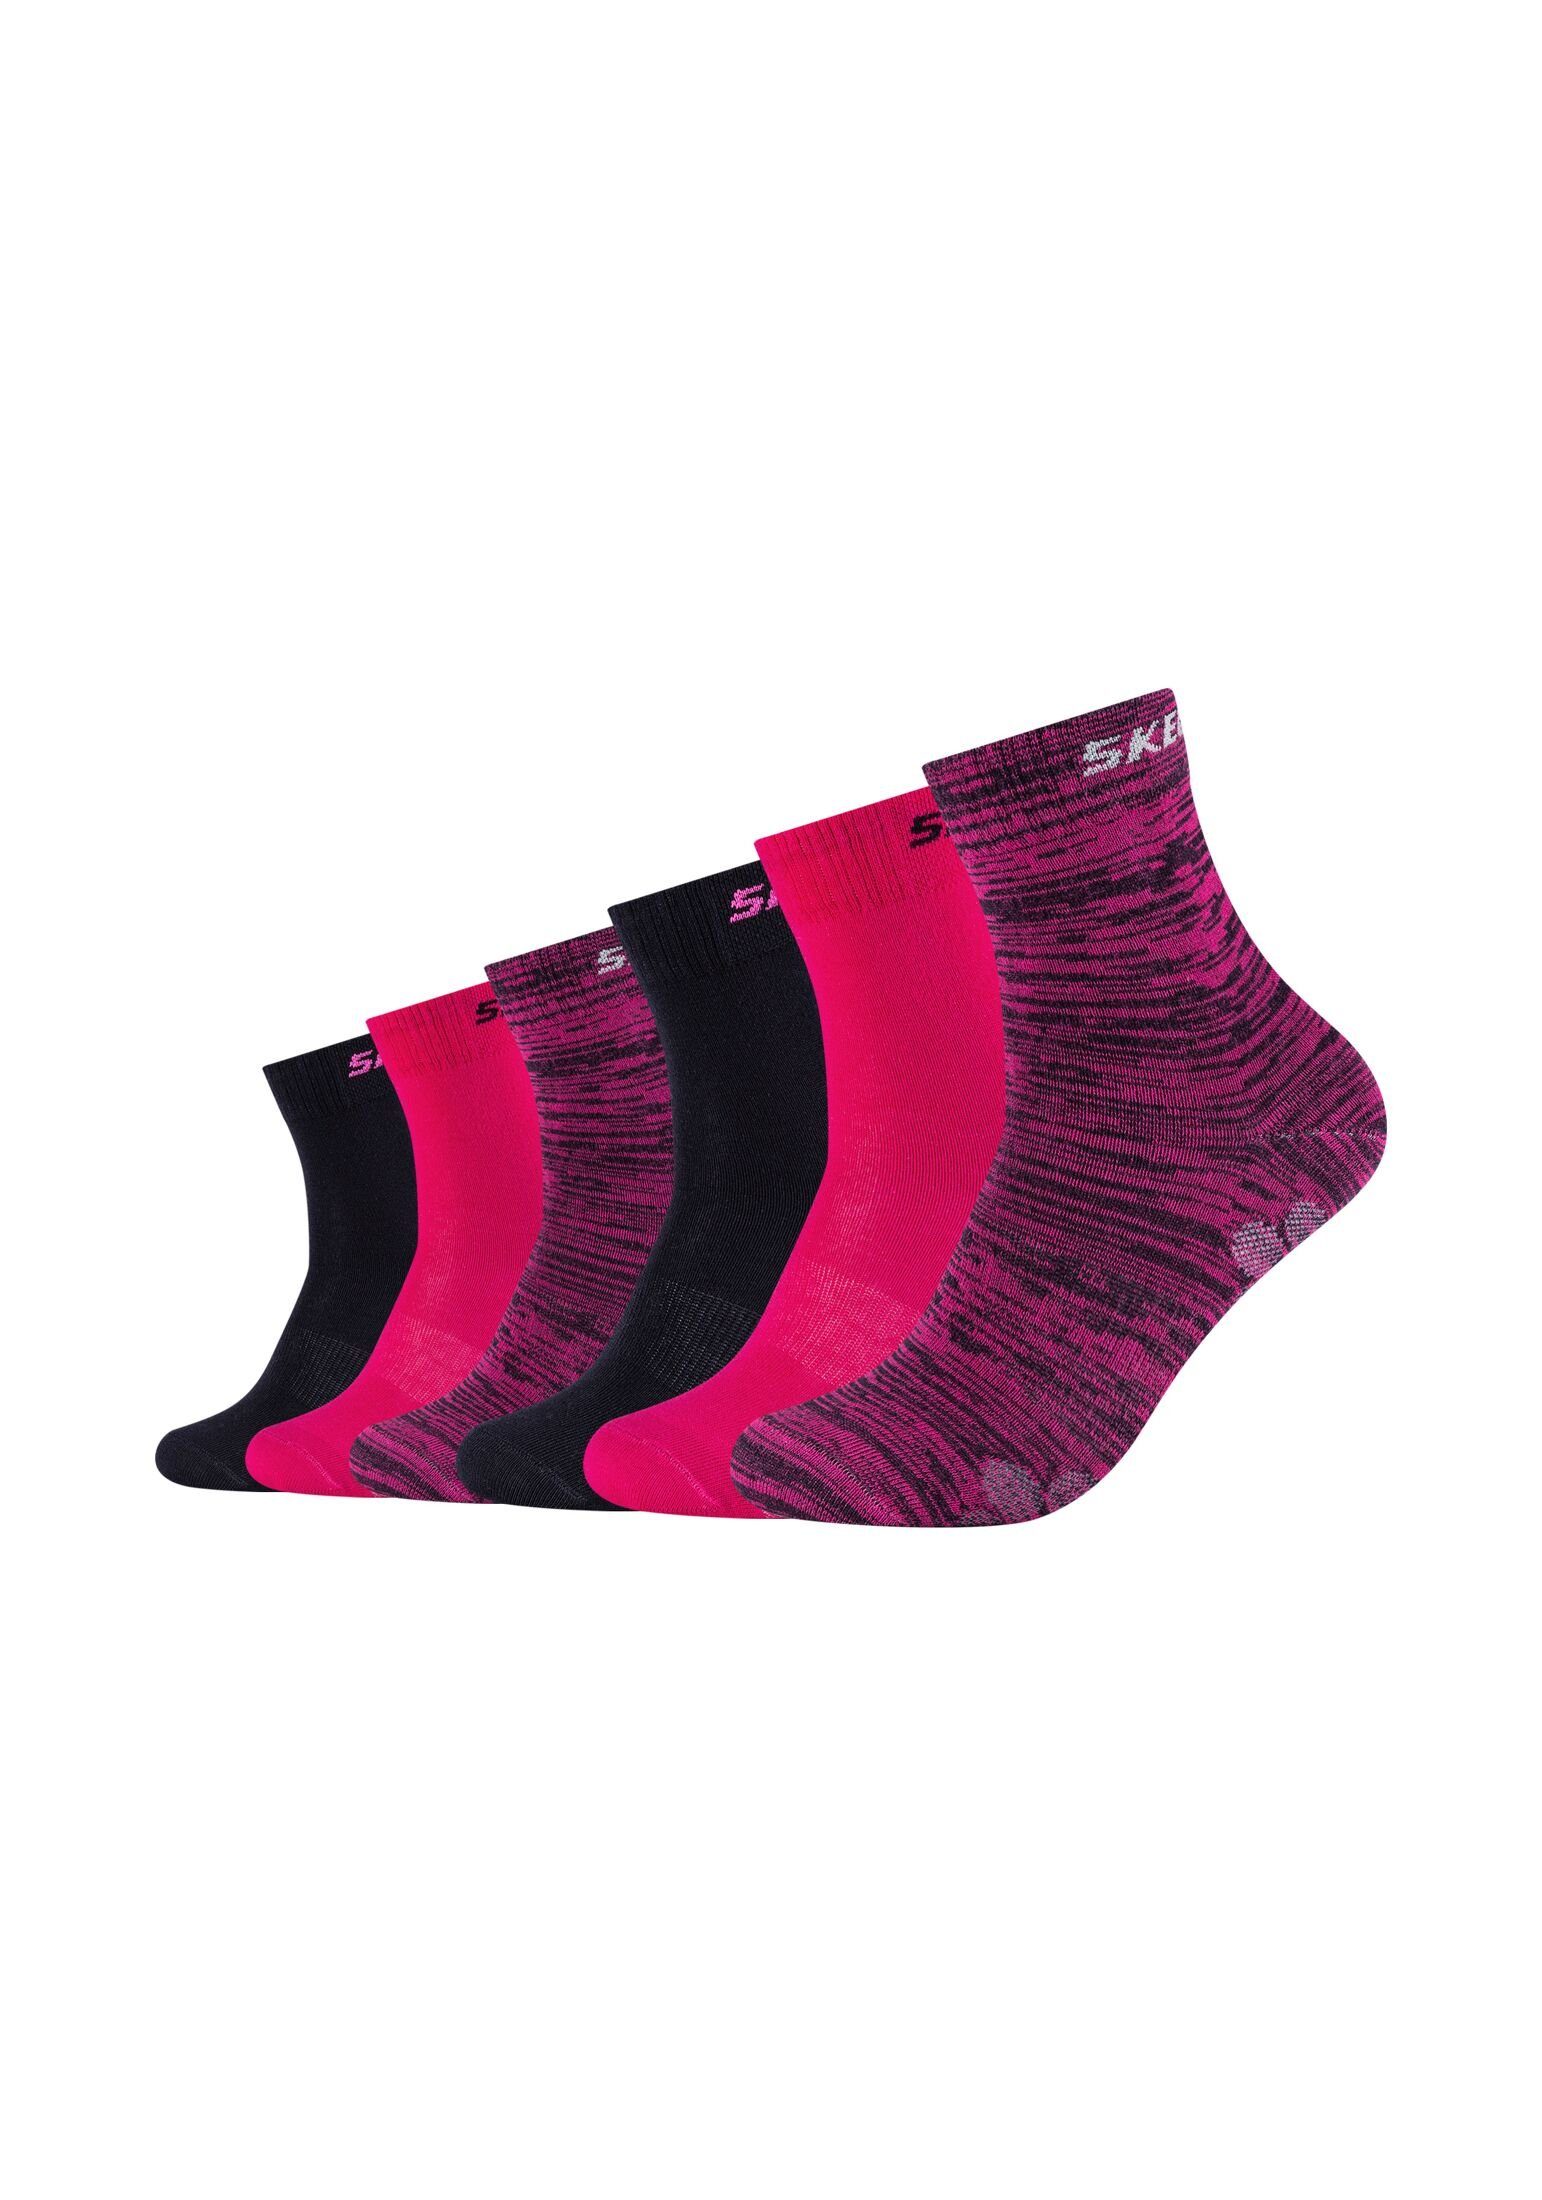 glow Skechers Socken Socken 6er pink Pack mouliné